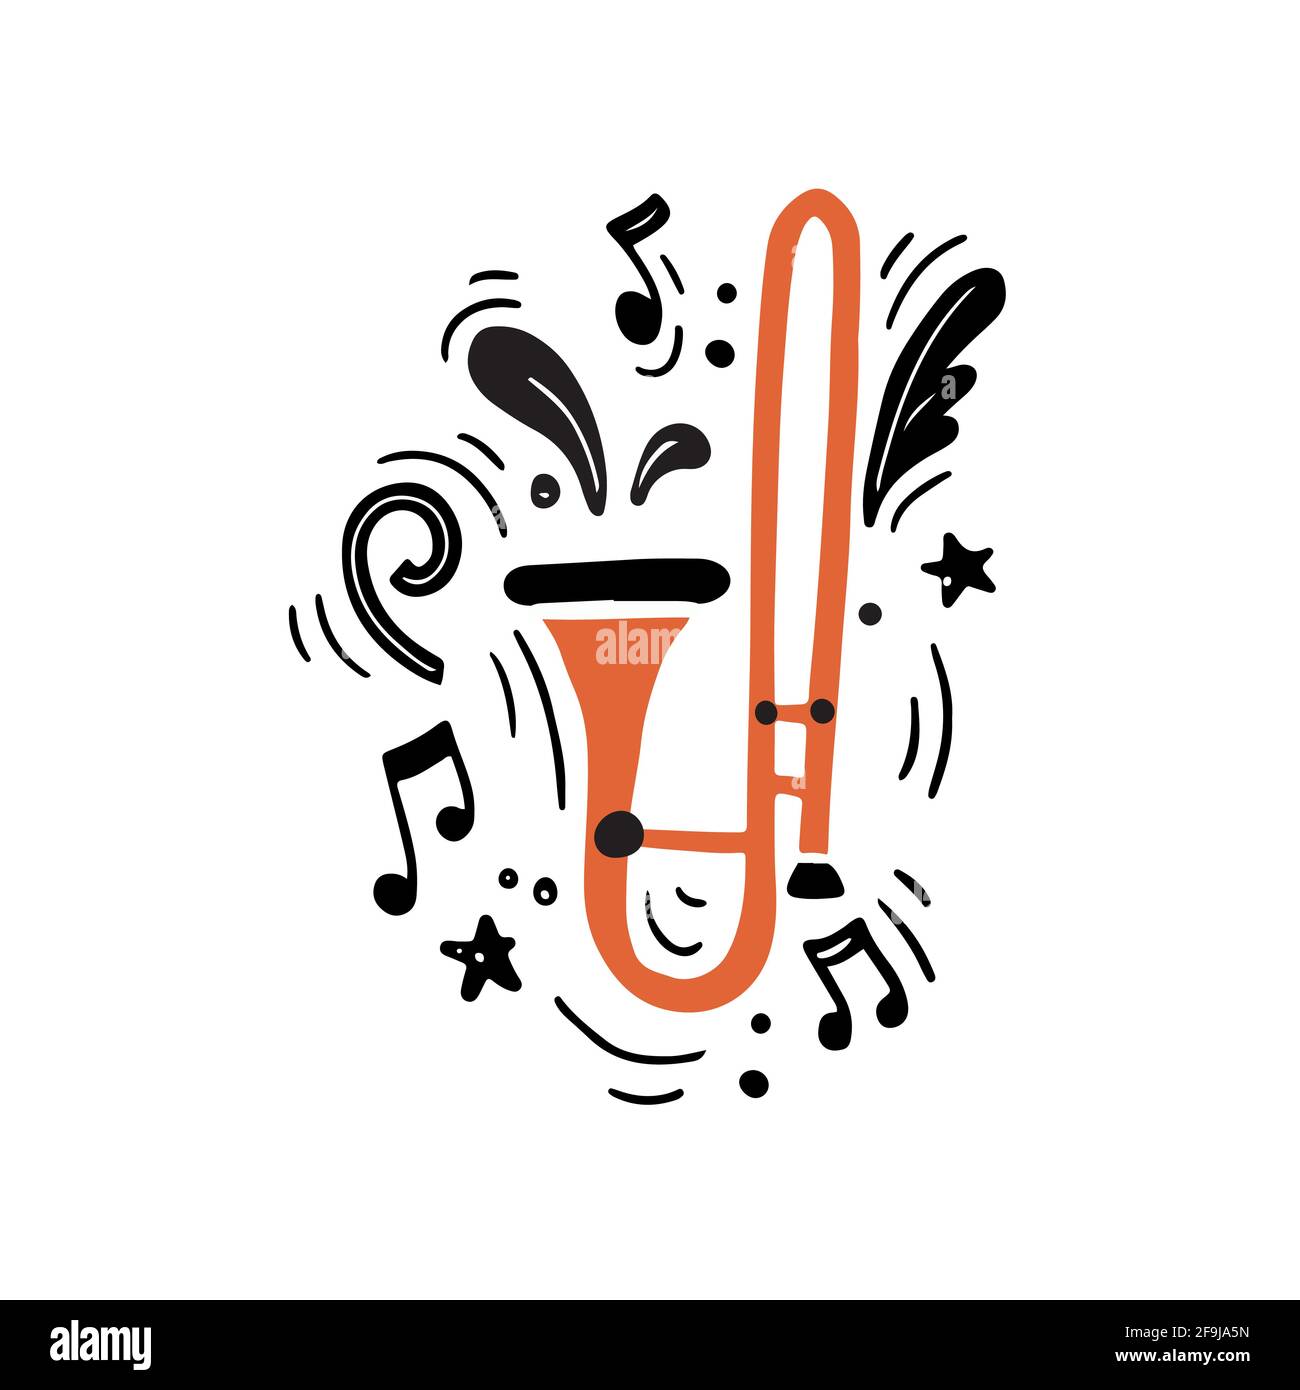 Minimalistische, handgezeichnete Vektordarstellung von traditionellem Messing im flachen Stil Instrument der hellen orange Farbe genannt Posaune spielt laute Musik Inmitten schwarzer Noten und kreativer Musik Stock Vektor